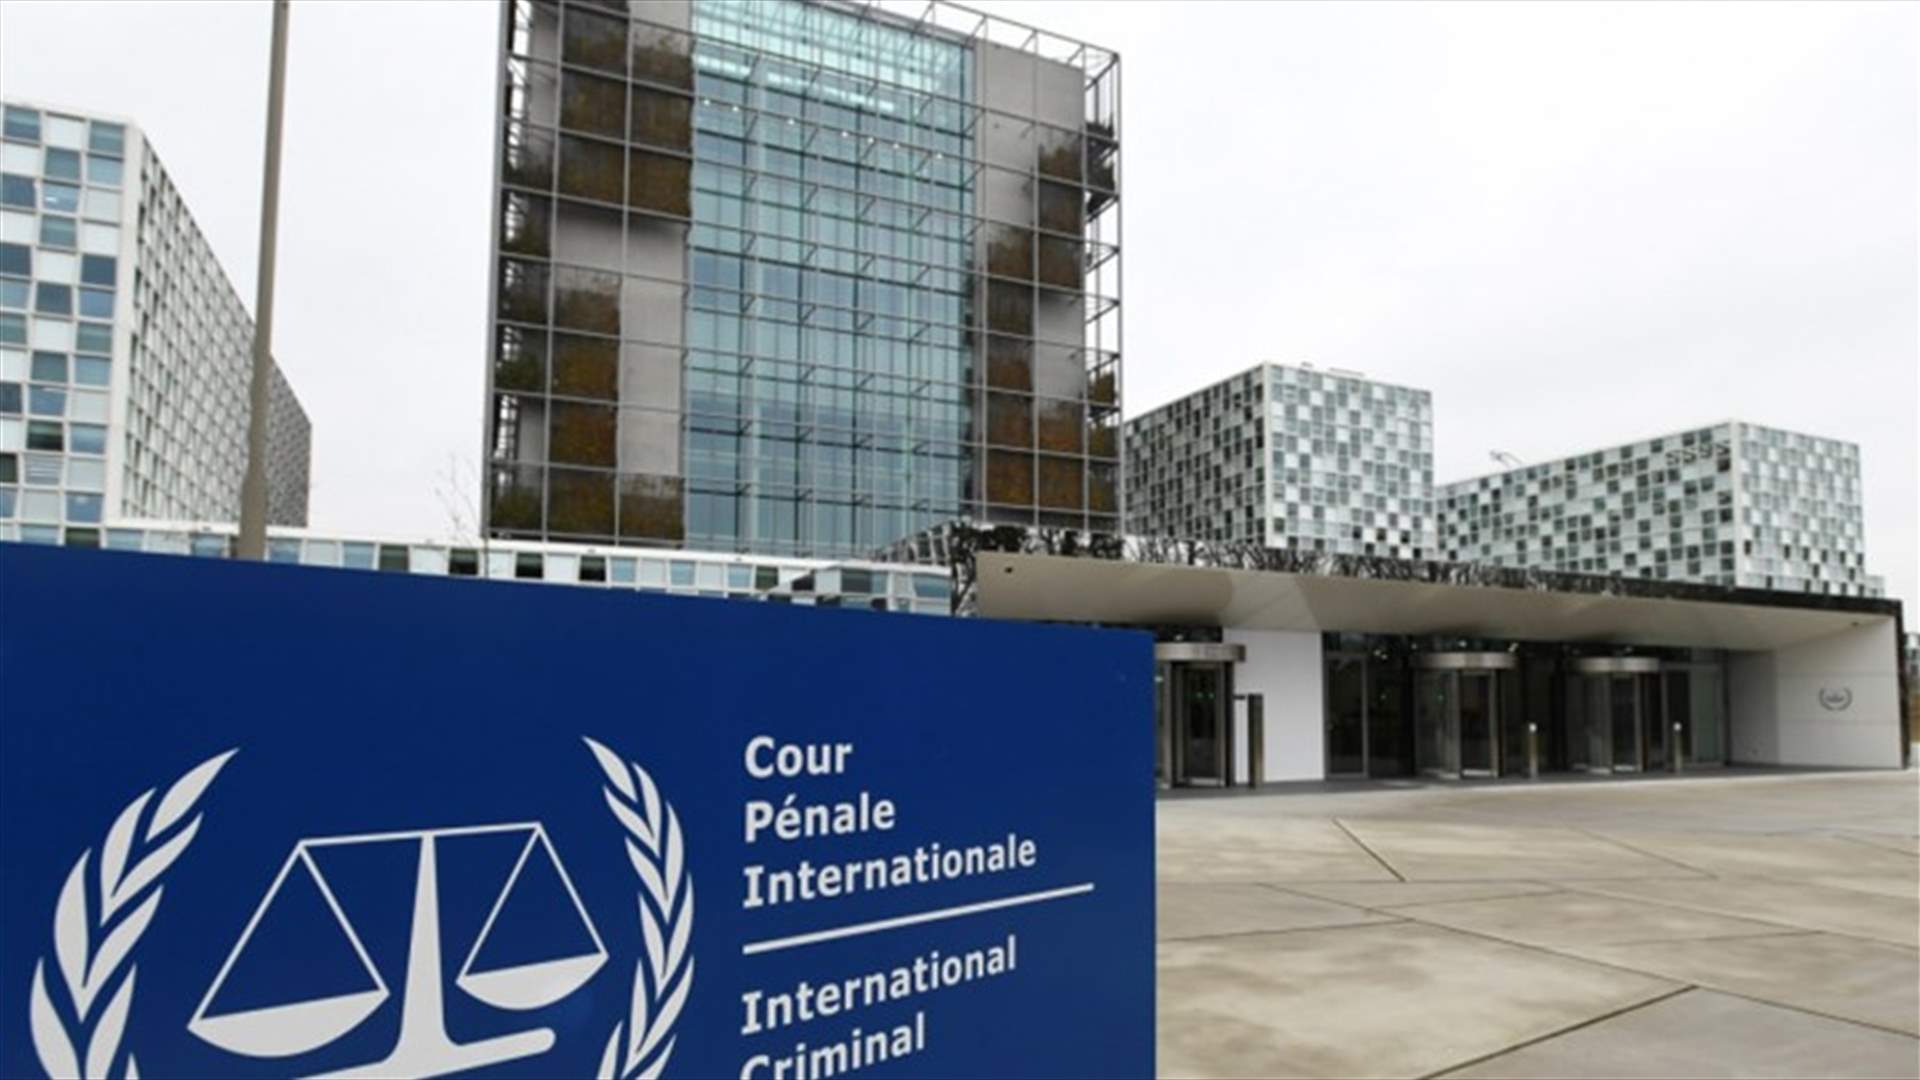 المحكمة الجنائية الدولية تلوّح بملاحقات قضائية بحق المرتزقة والعسكريين الأجانب في ليبيا